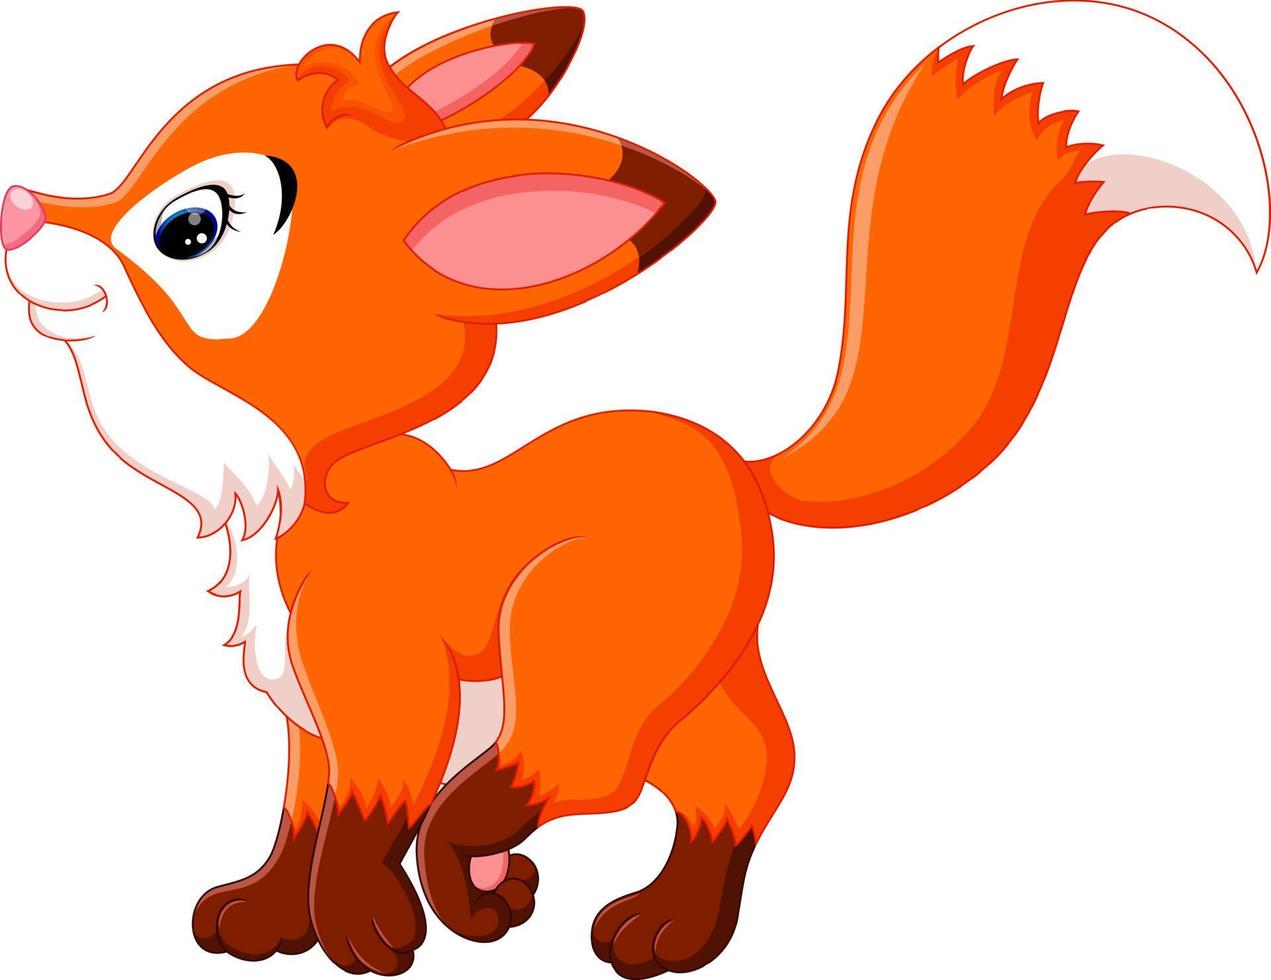 Cute fox cartoon vector